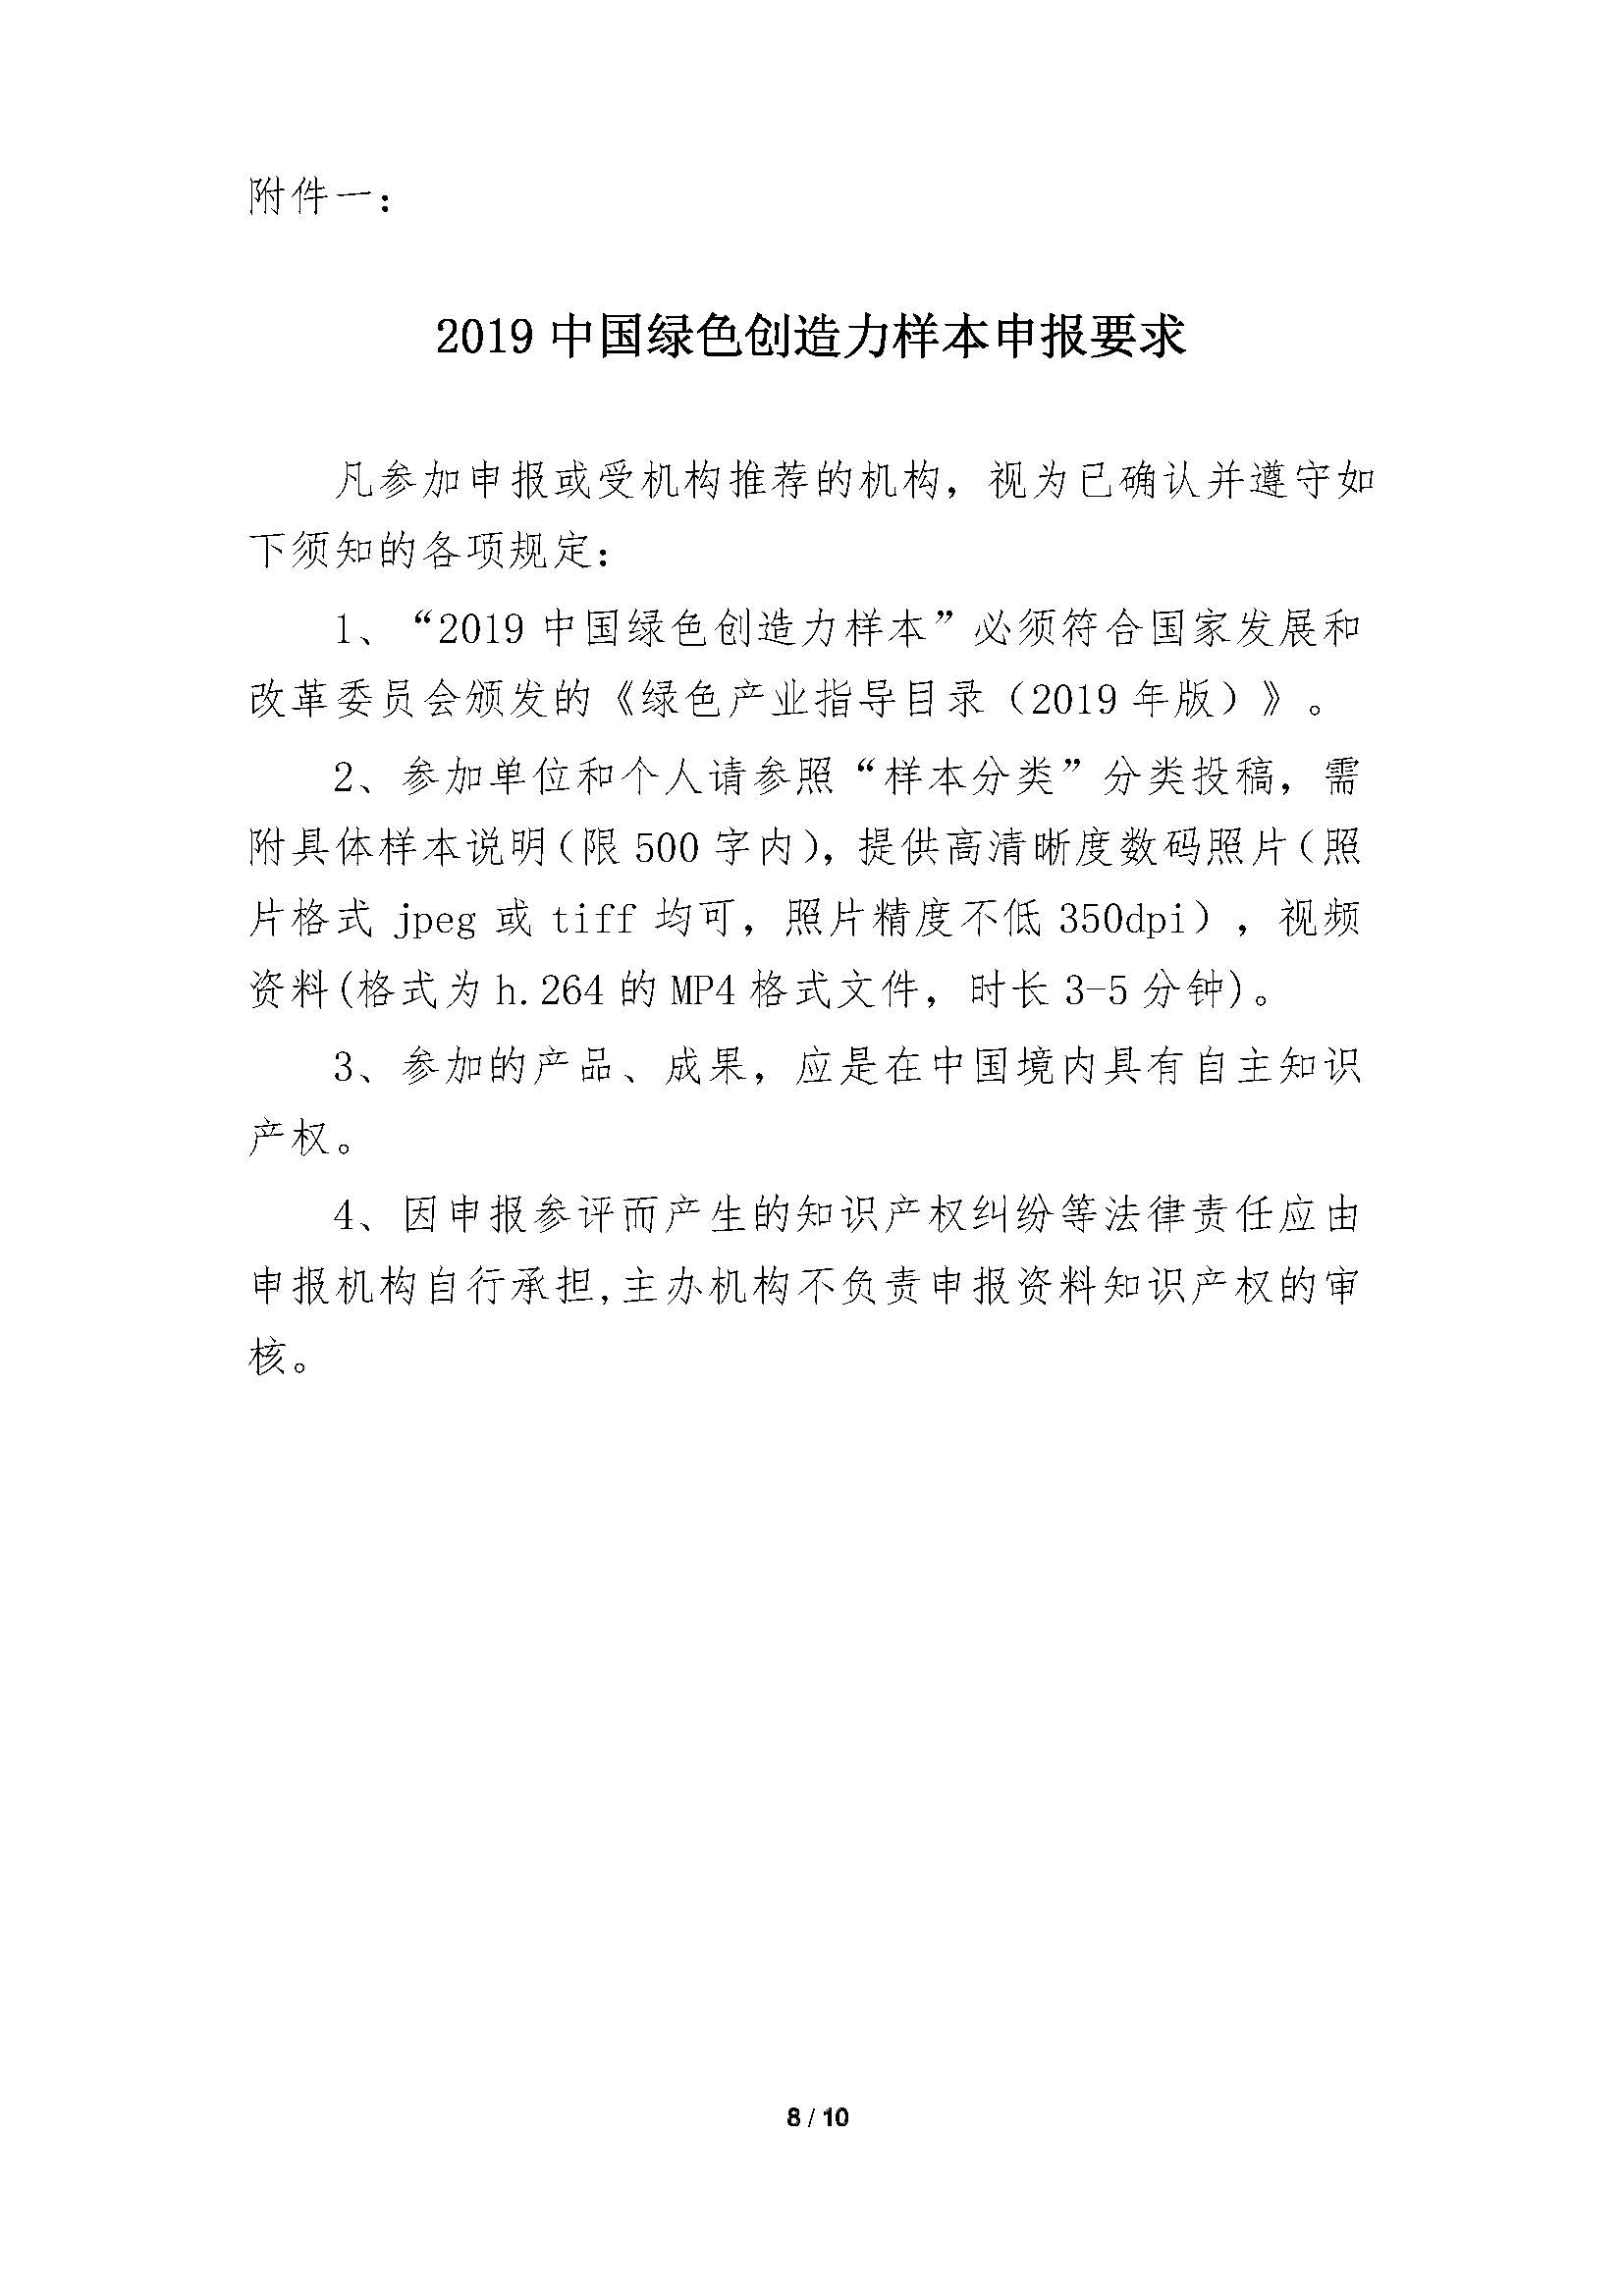 中国绿色创造力样本”的通知_页面_08.jpg